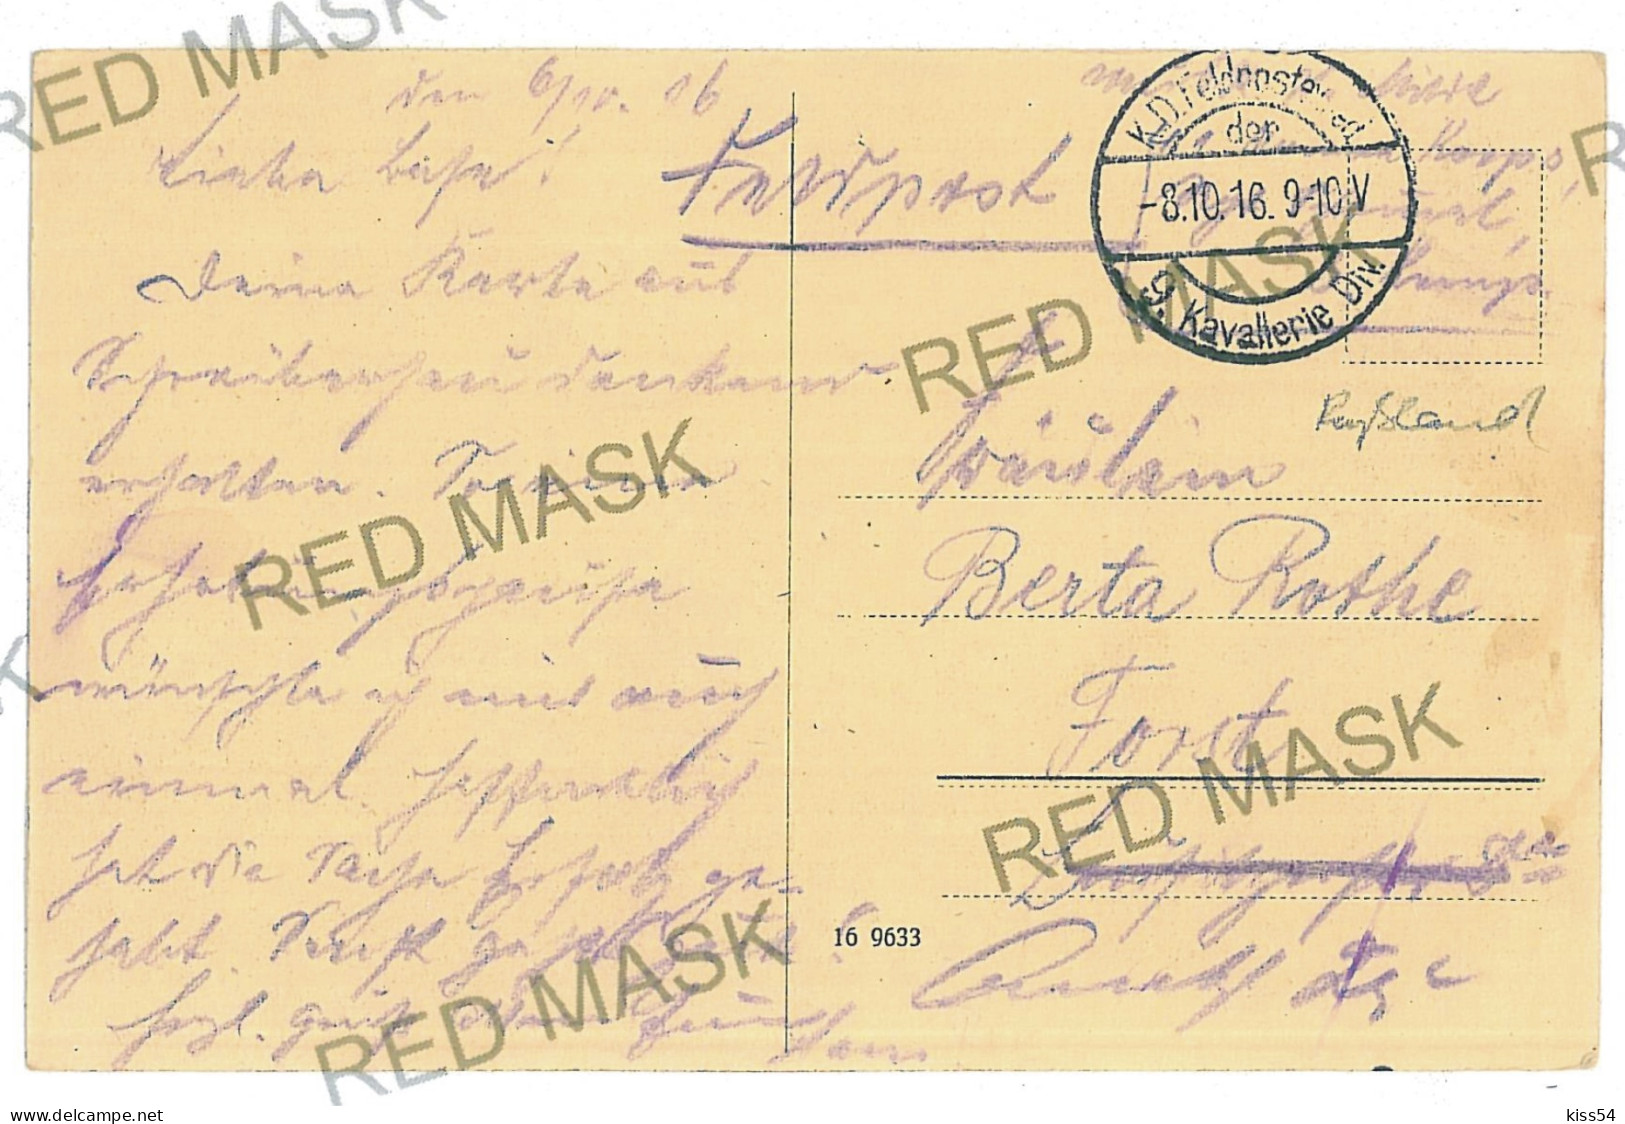 BL 23 - 10732 PINSK, Belarus, Street - Old Postcard, CENSOR - Used - 1916 - Belarus